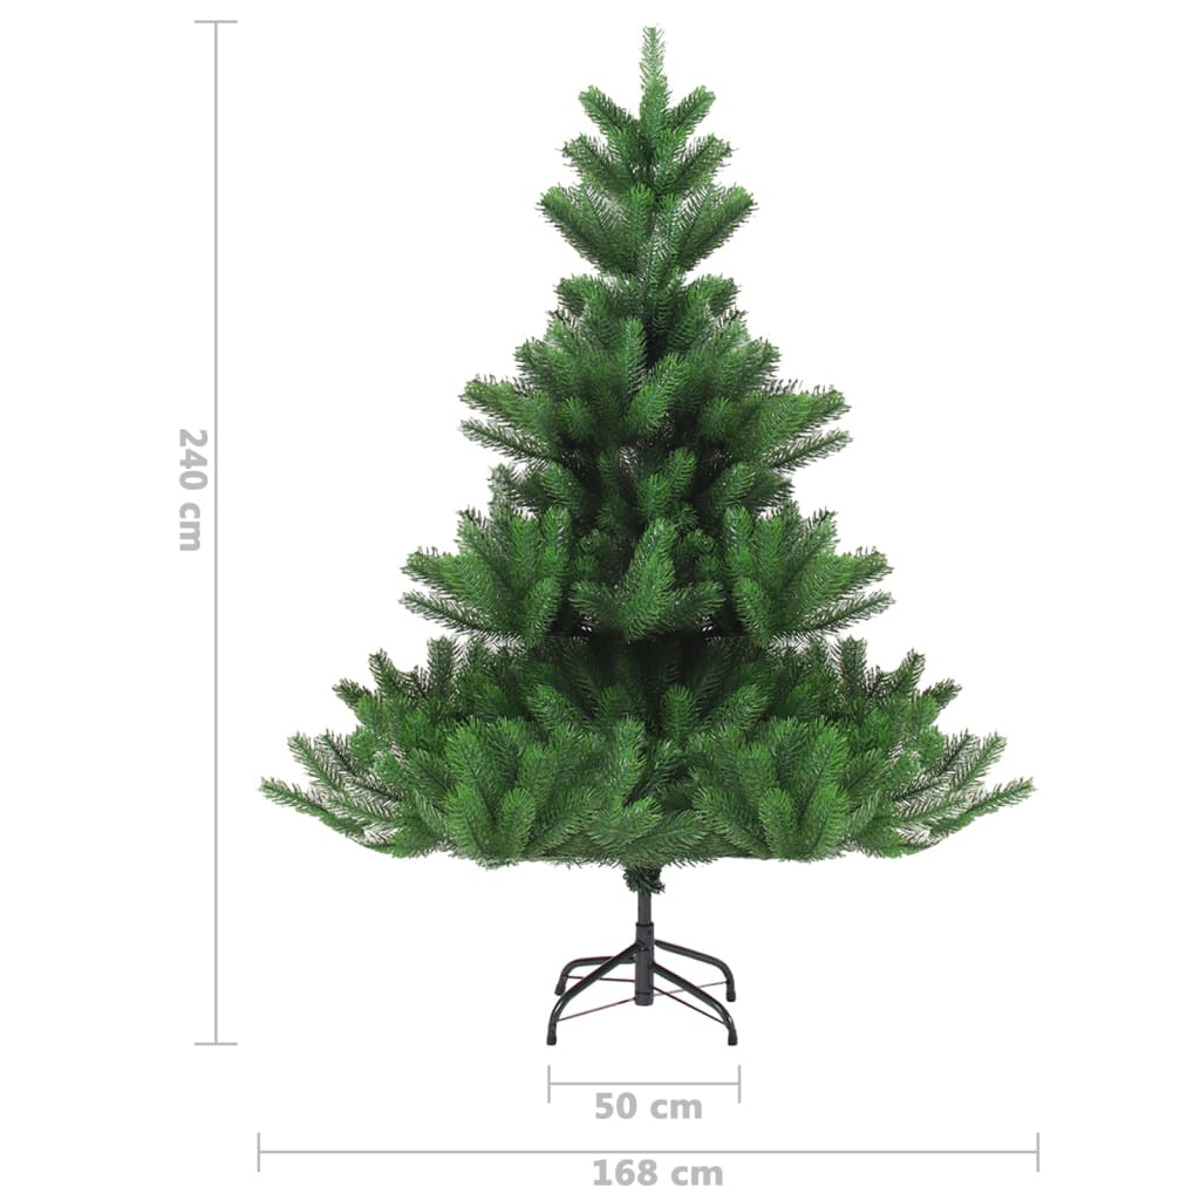 VIDAXL 3077648 Weihnachtsbaum